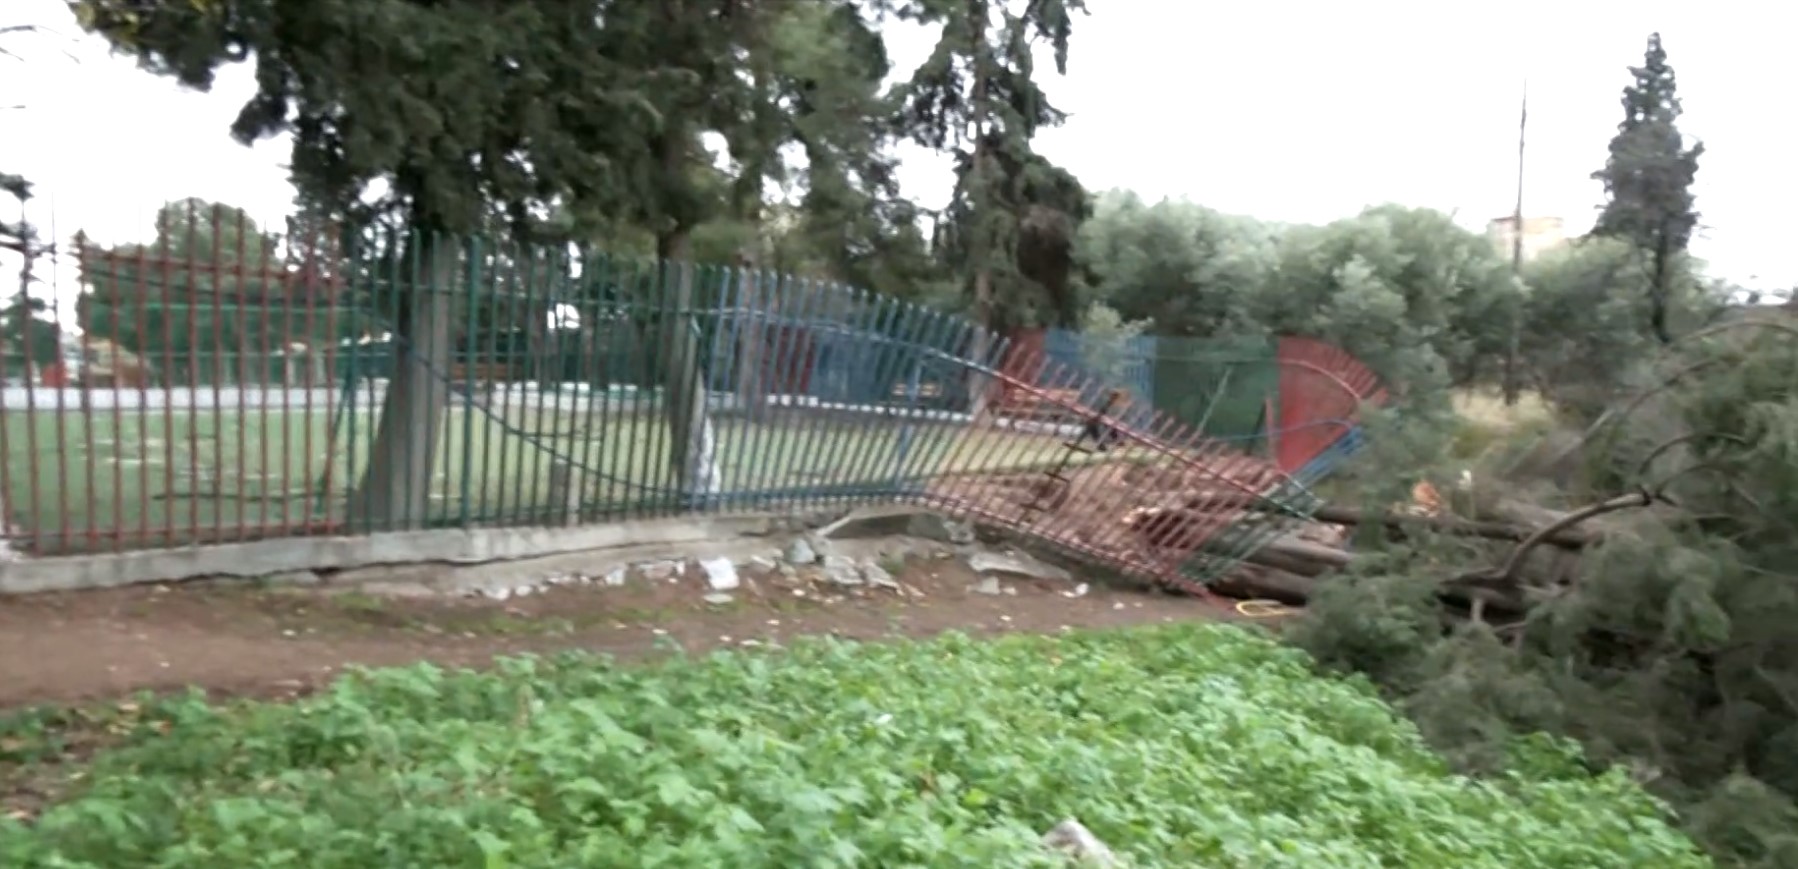 Θεσσαλονίκη: Πτώσεις δέντρων προκάλεσαν ζημιές σε αυτοκίνητα- Προβλήματα από τους ισχυρούς ανέμους και στη Χαλκιδική